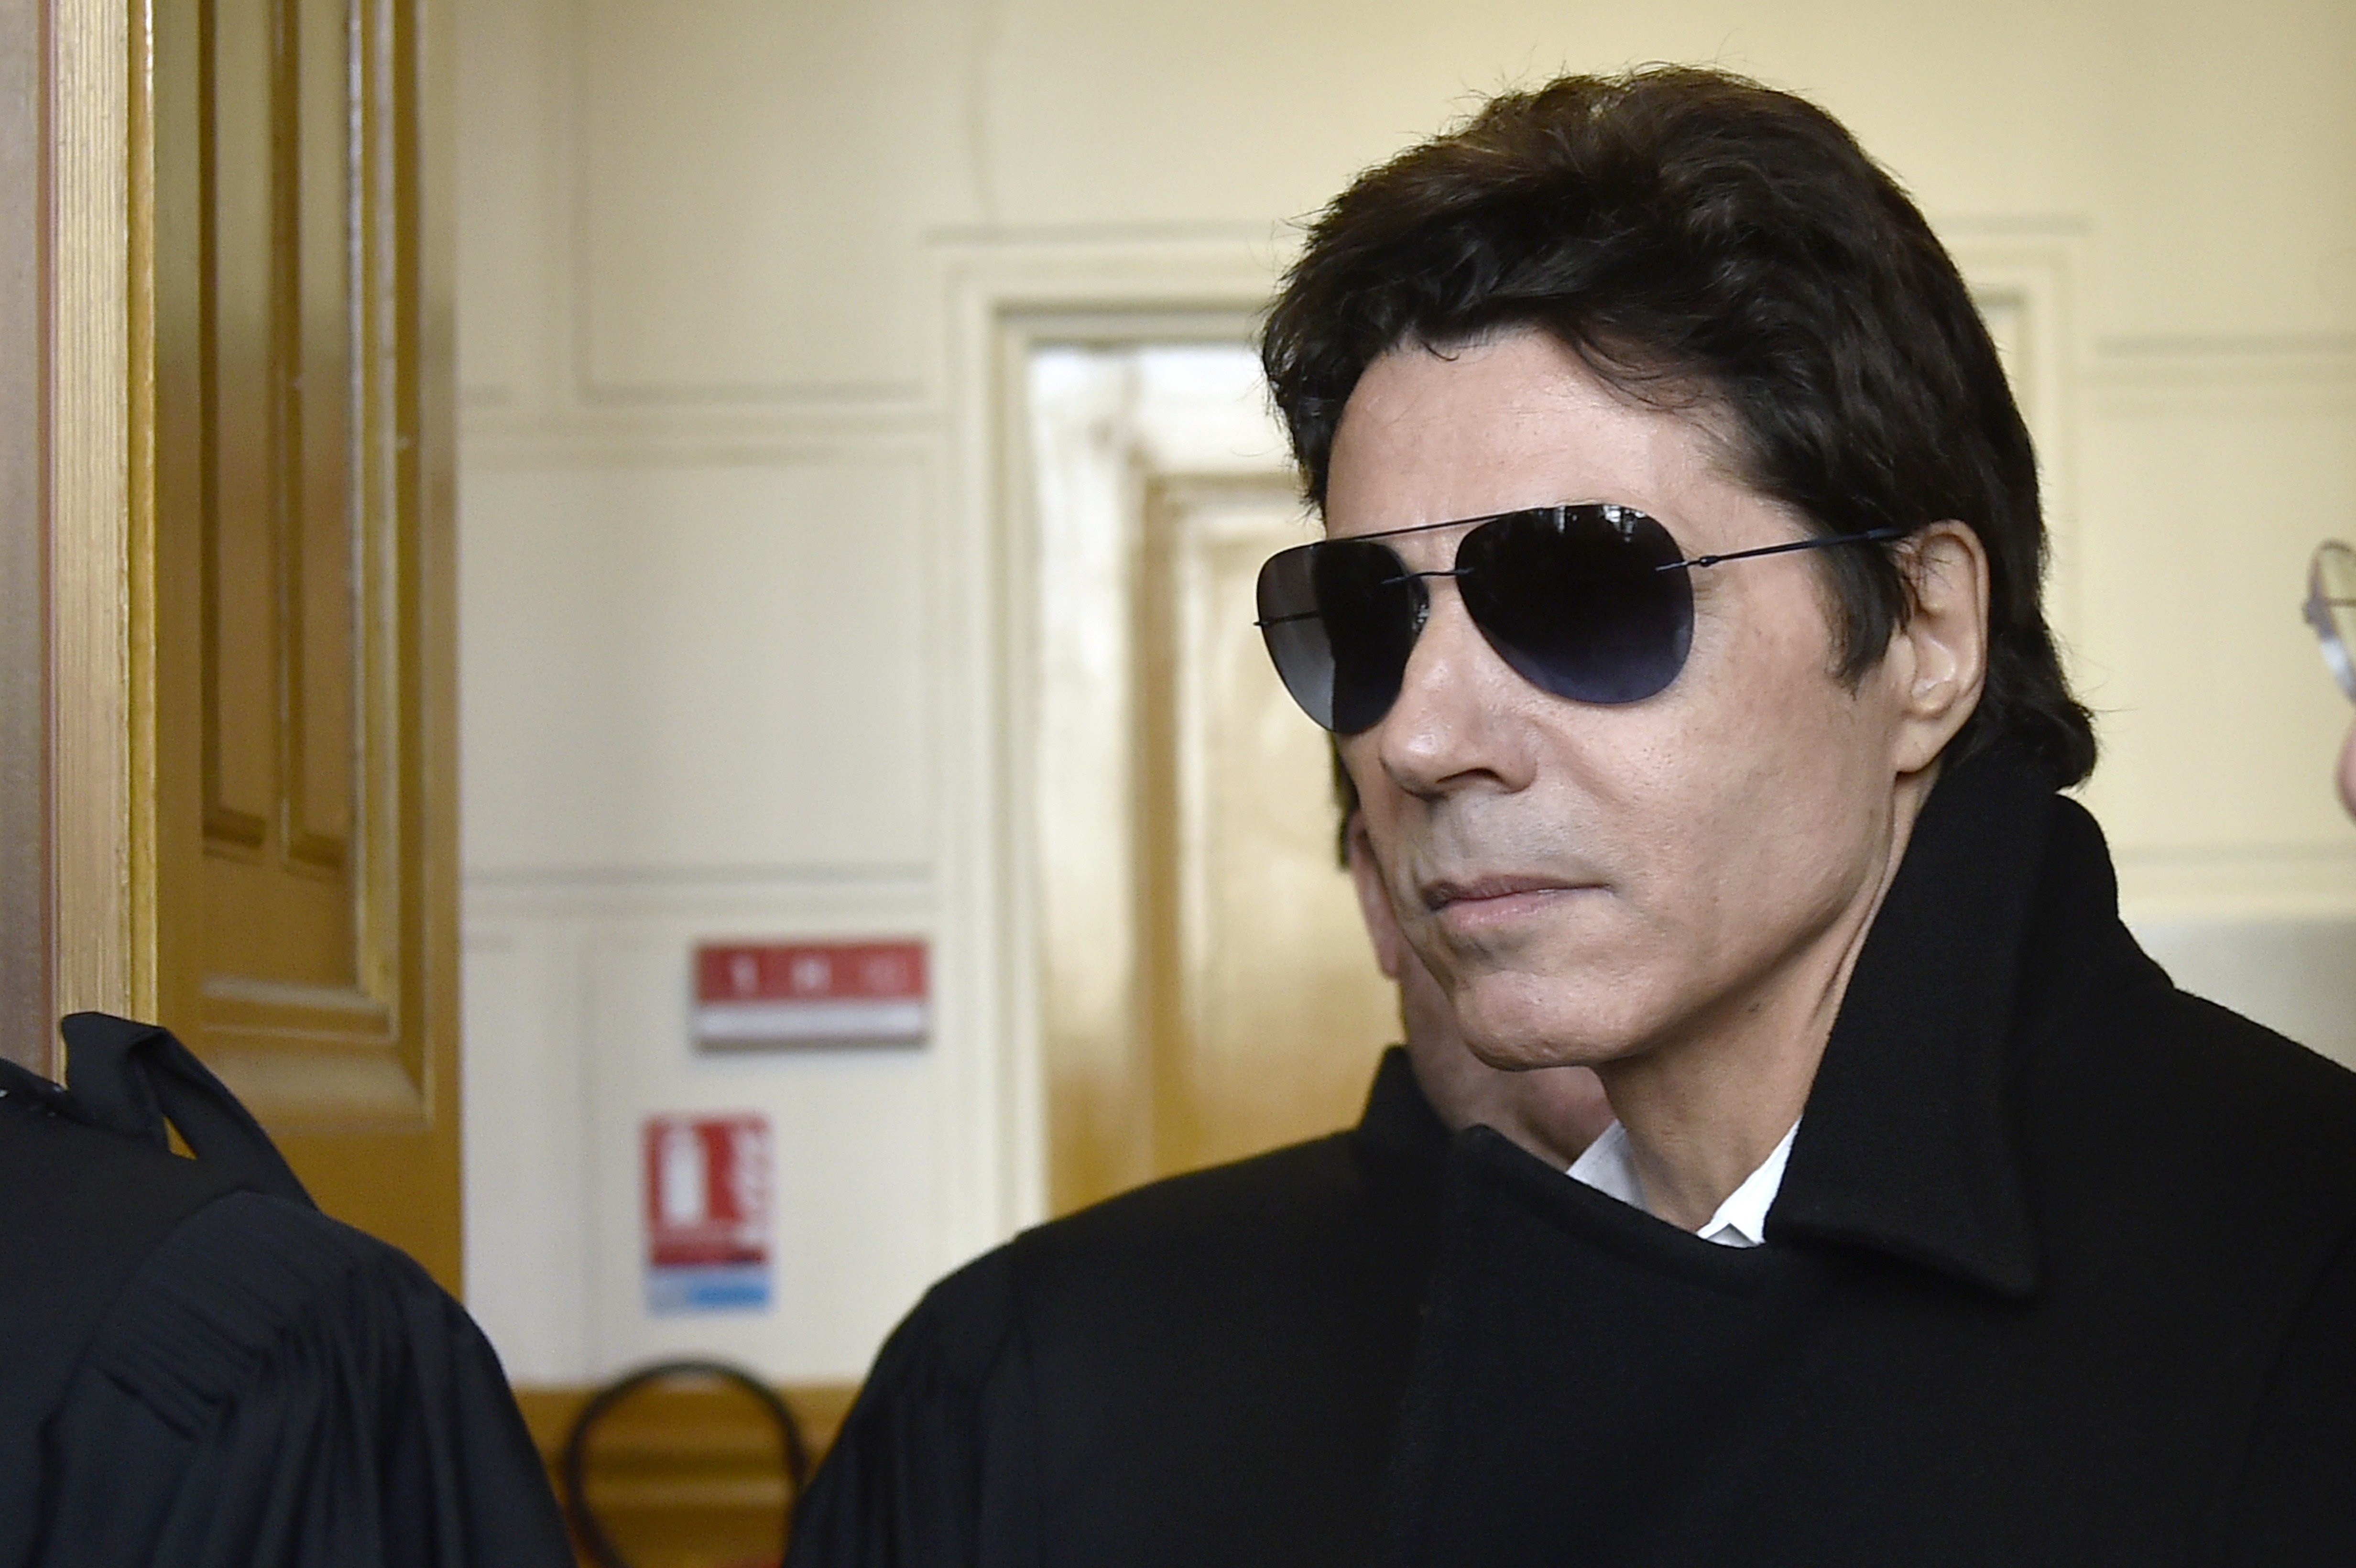 Le chanteur français Jean-Luc Lahaye arrive au palais de justice de Paris, le 23 mars 2015, pour assister à son procès pour corruption de mineure de moins de 15 ans. | Source : Getty Images